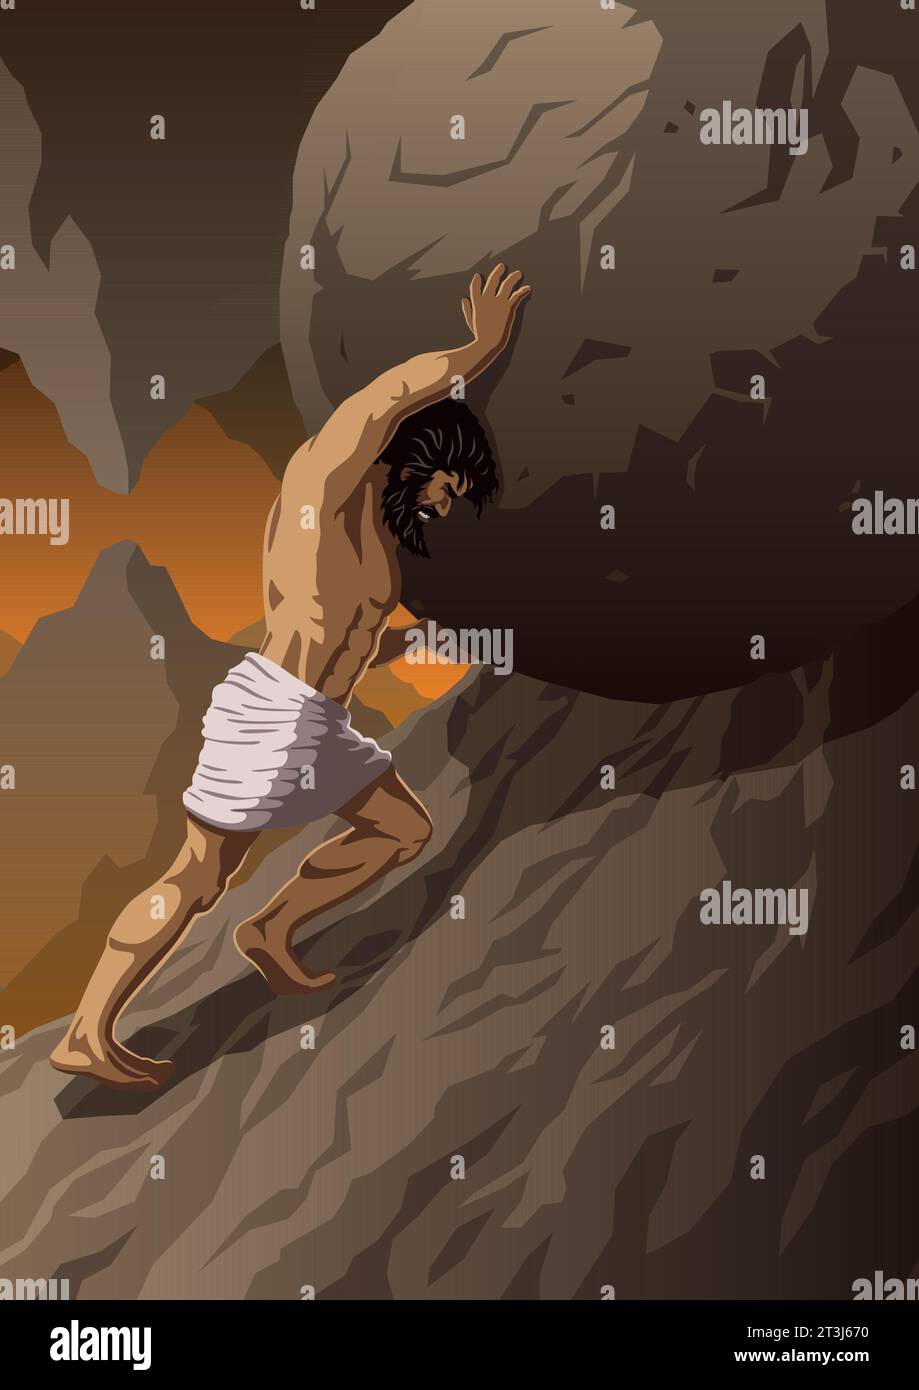 Die Sisyphus-Stämme schieben massive Felsbrocken vor bergigem Hintergrund bergauf. Sein entschlossenes Gesicht offenbart die endlose Qual seiner Bestrafung. Stock Vektor